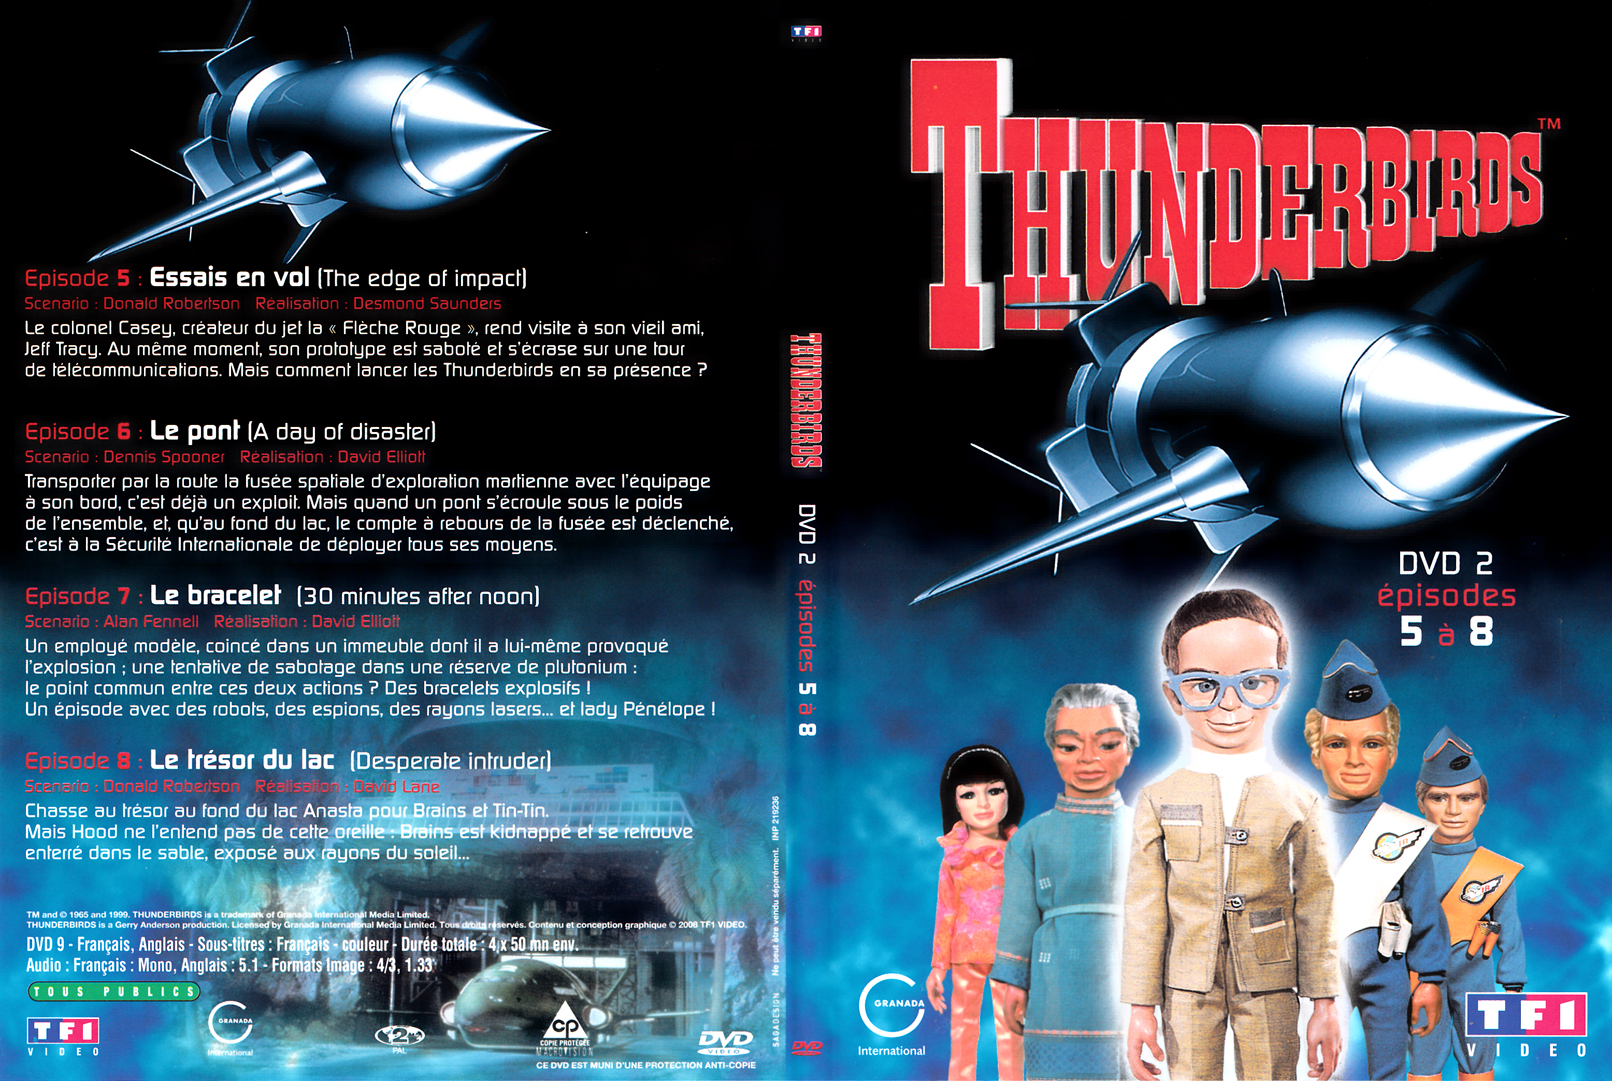 Jaquette DVD Thunderbirds les sentinelles de l